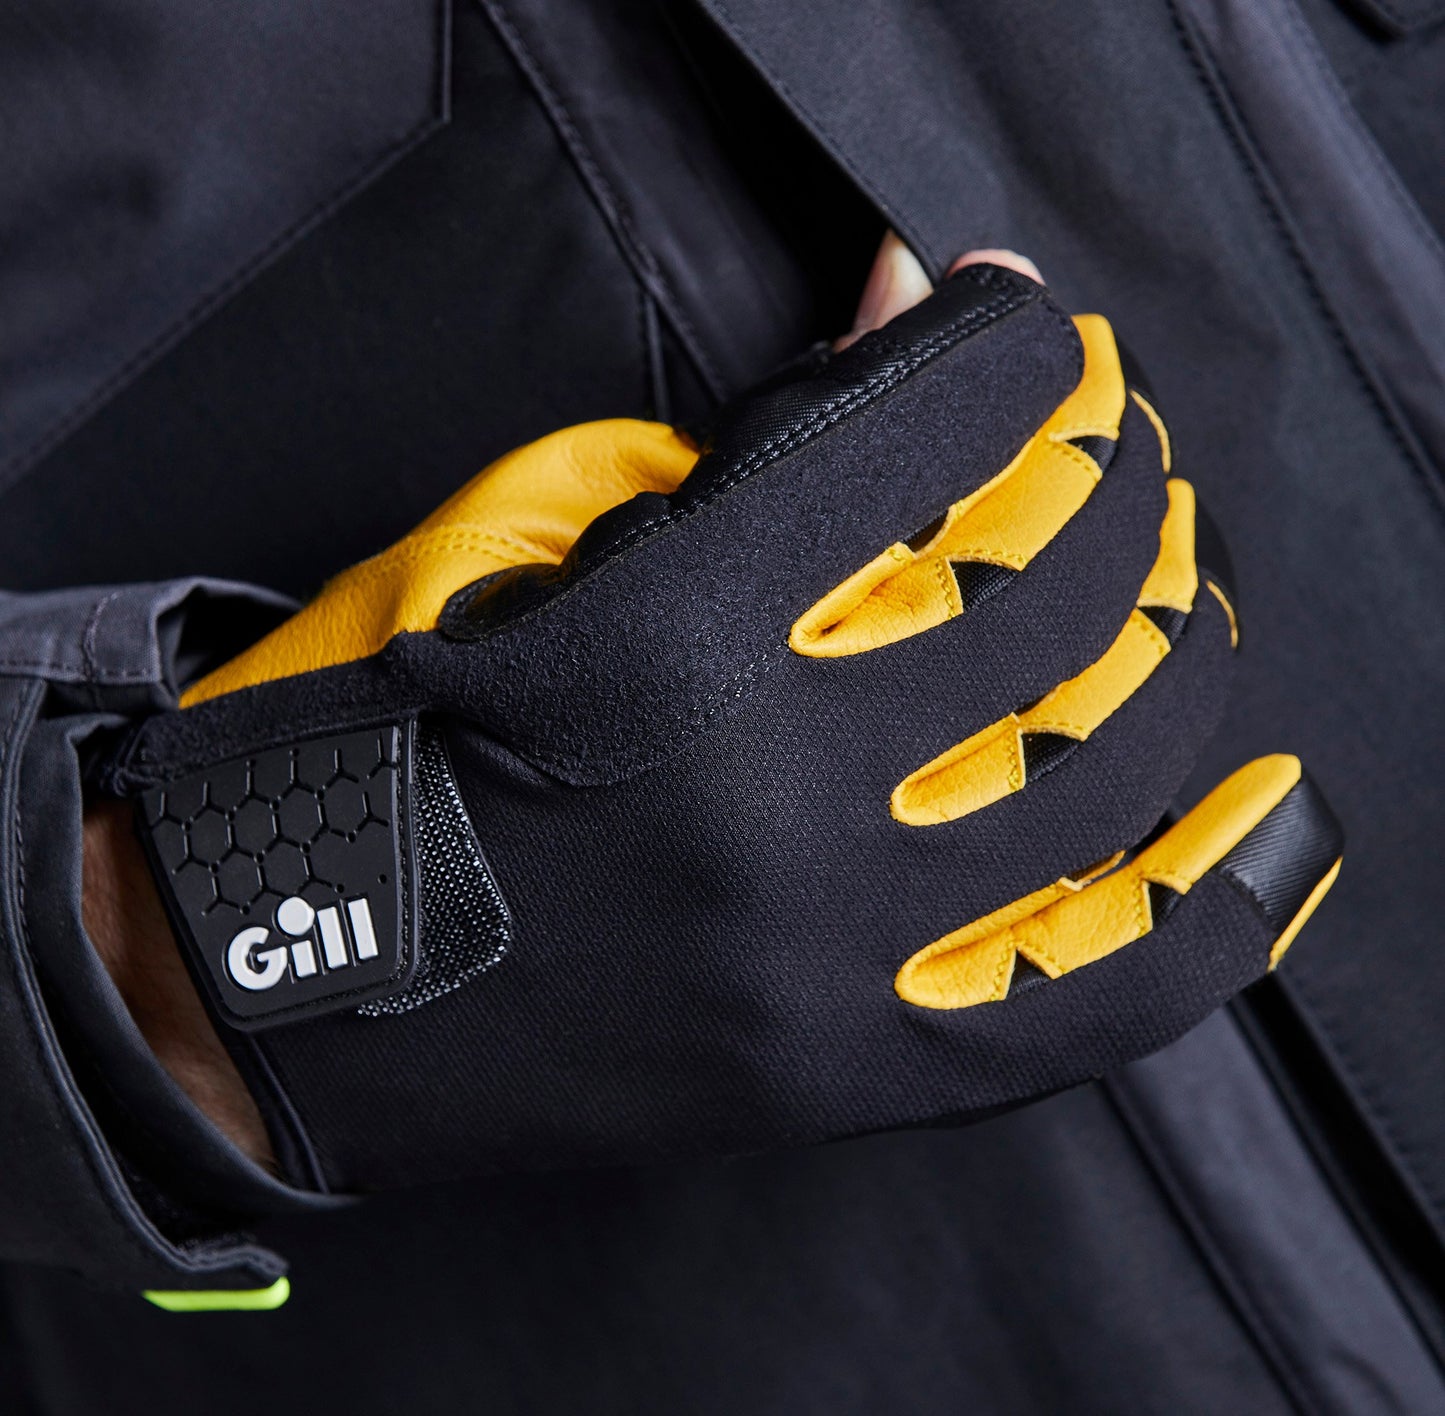 GILL Pro Handschuhe 7453-BLK01-XS